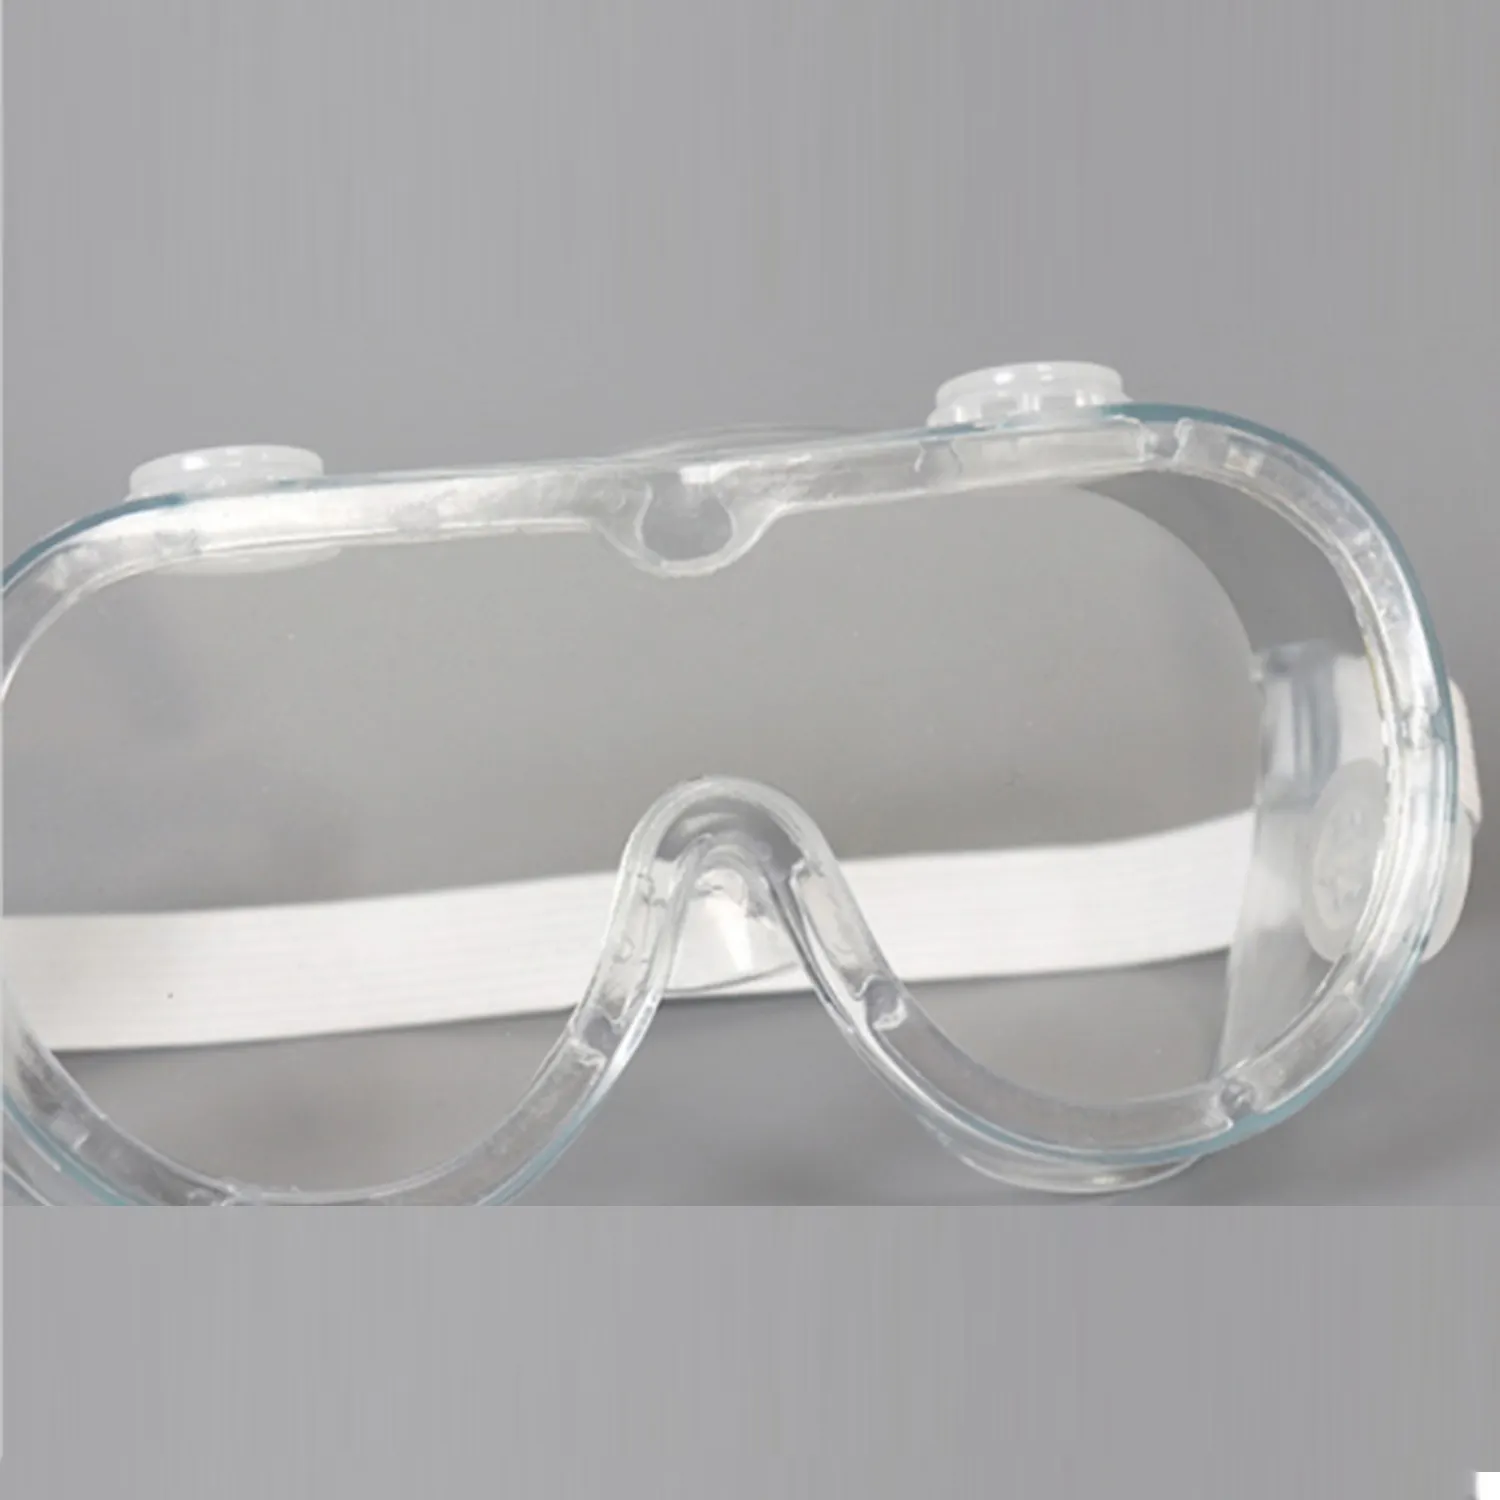 מחיר טוב תעשייתי כפול שכבת ריתוך משקפיים ציפוי אנטי ערפל הגנת עיניים משקפי בטיחות מתכווננים של גוגל